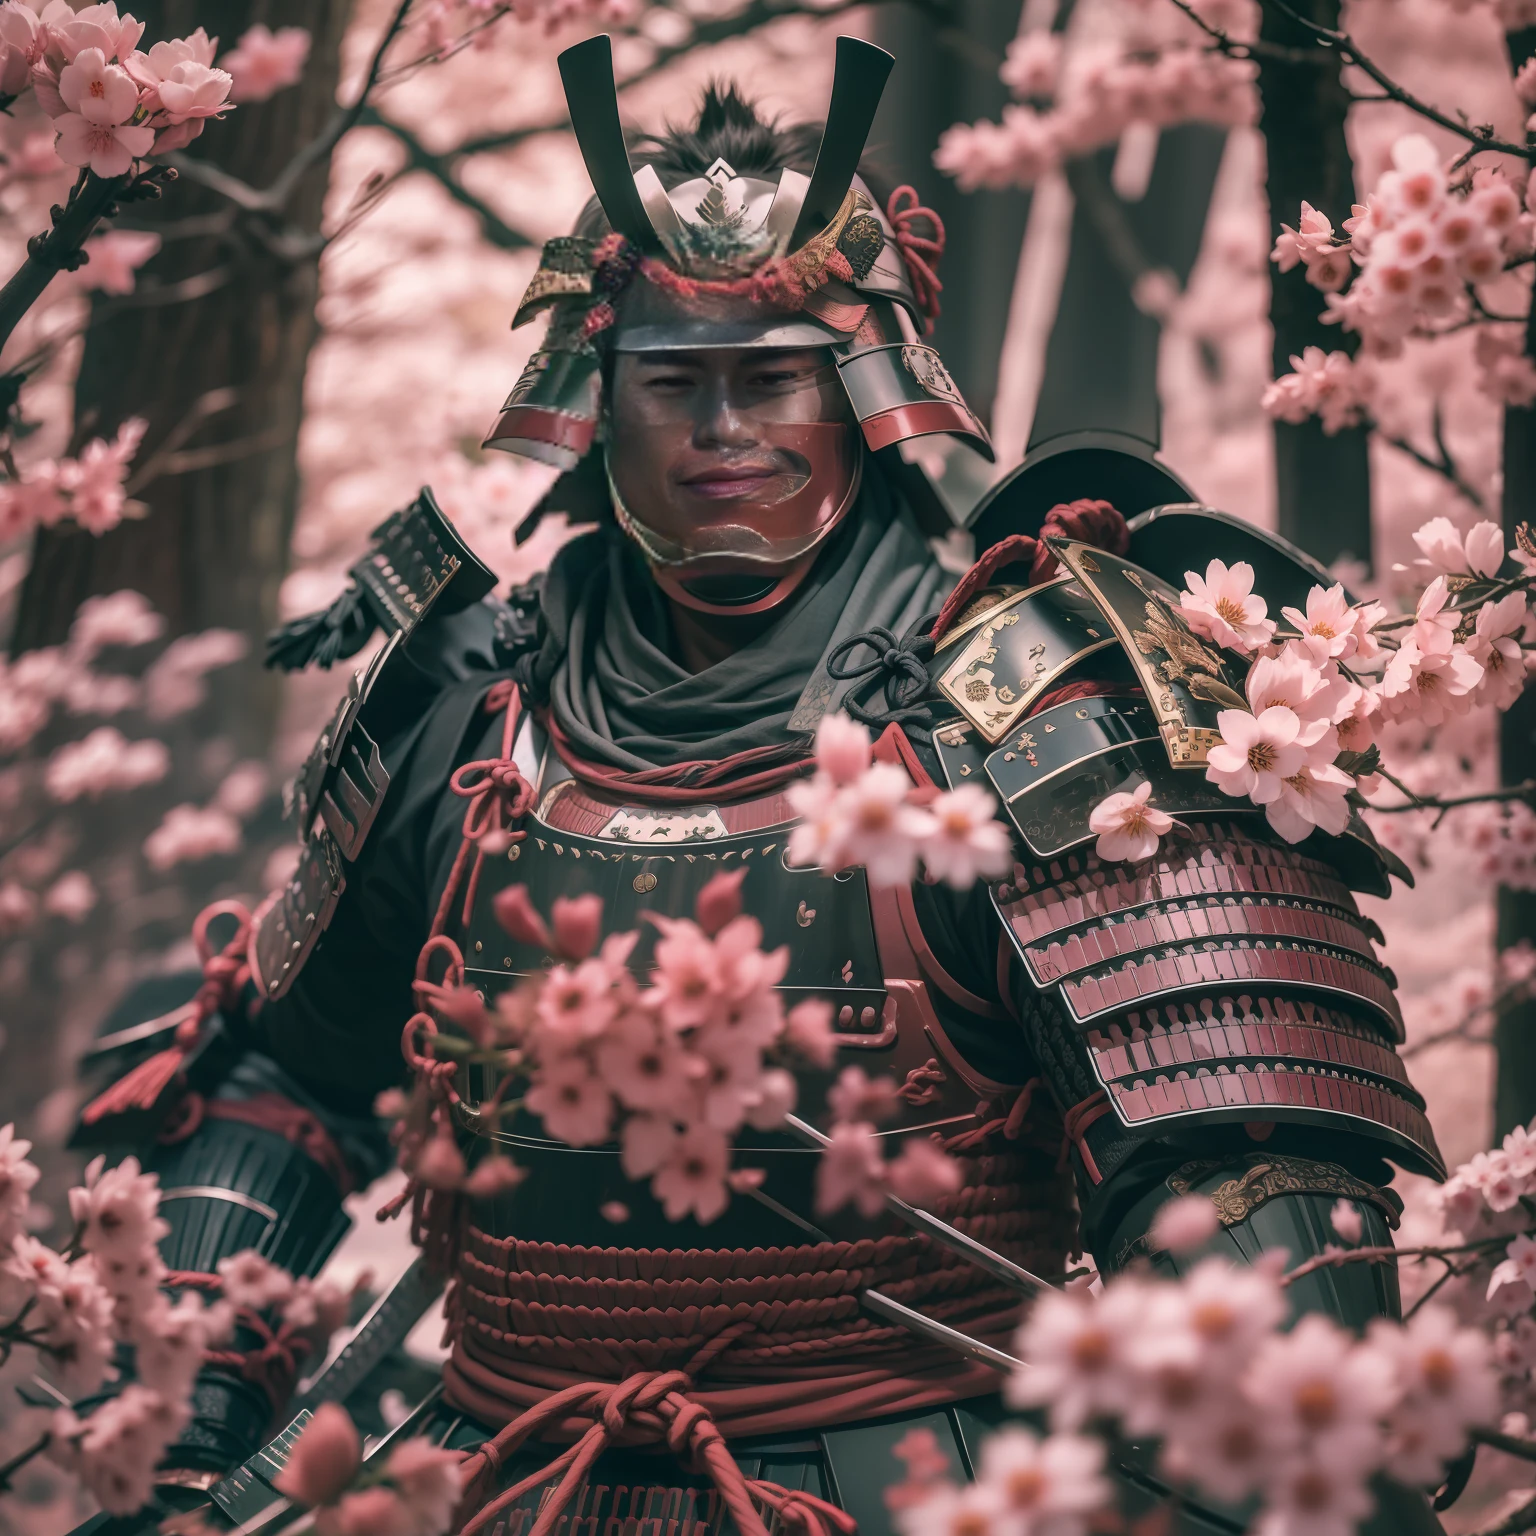 самурай в доспехах, стоять в лесу сакуры